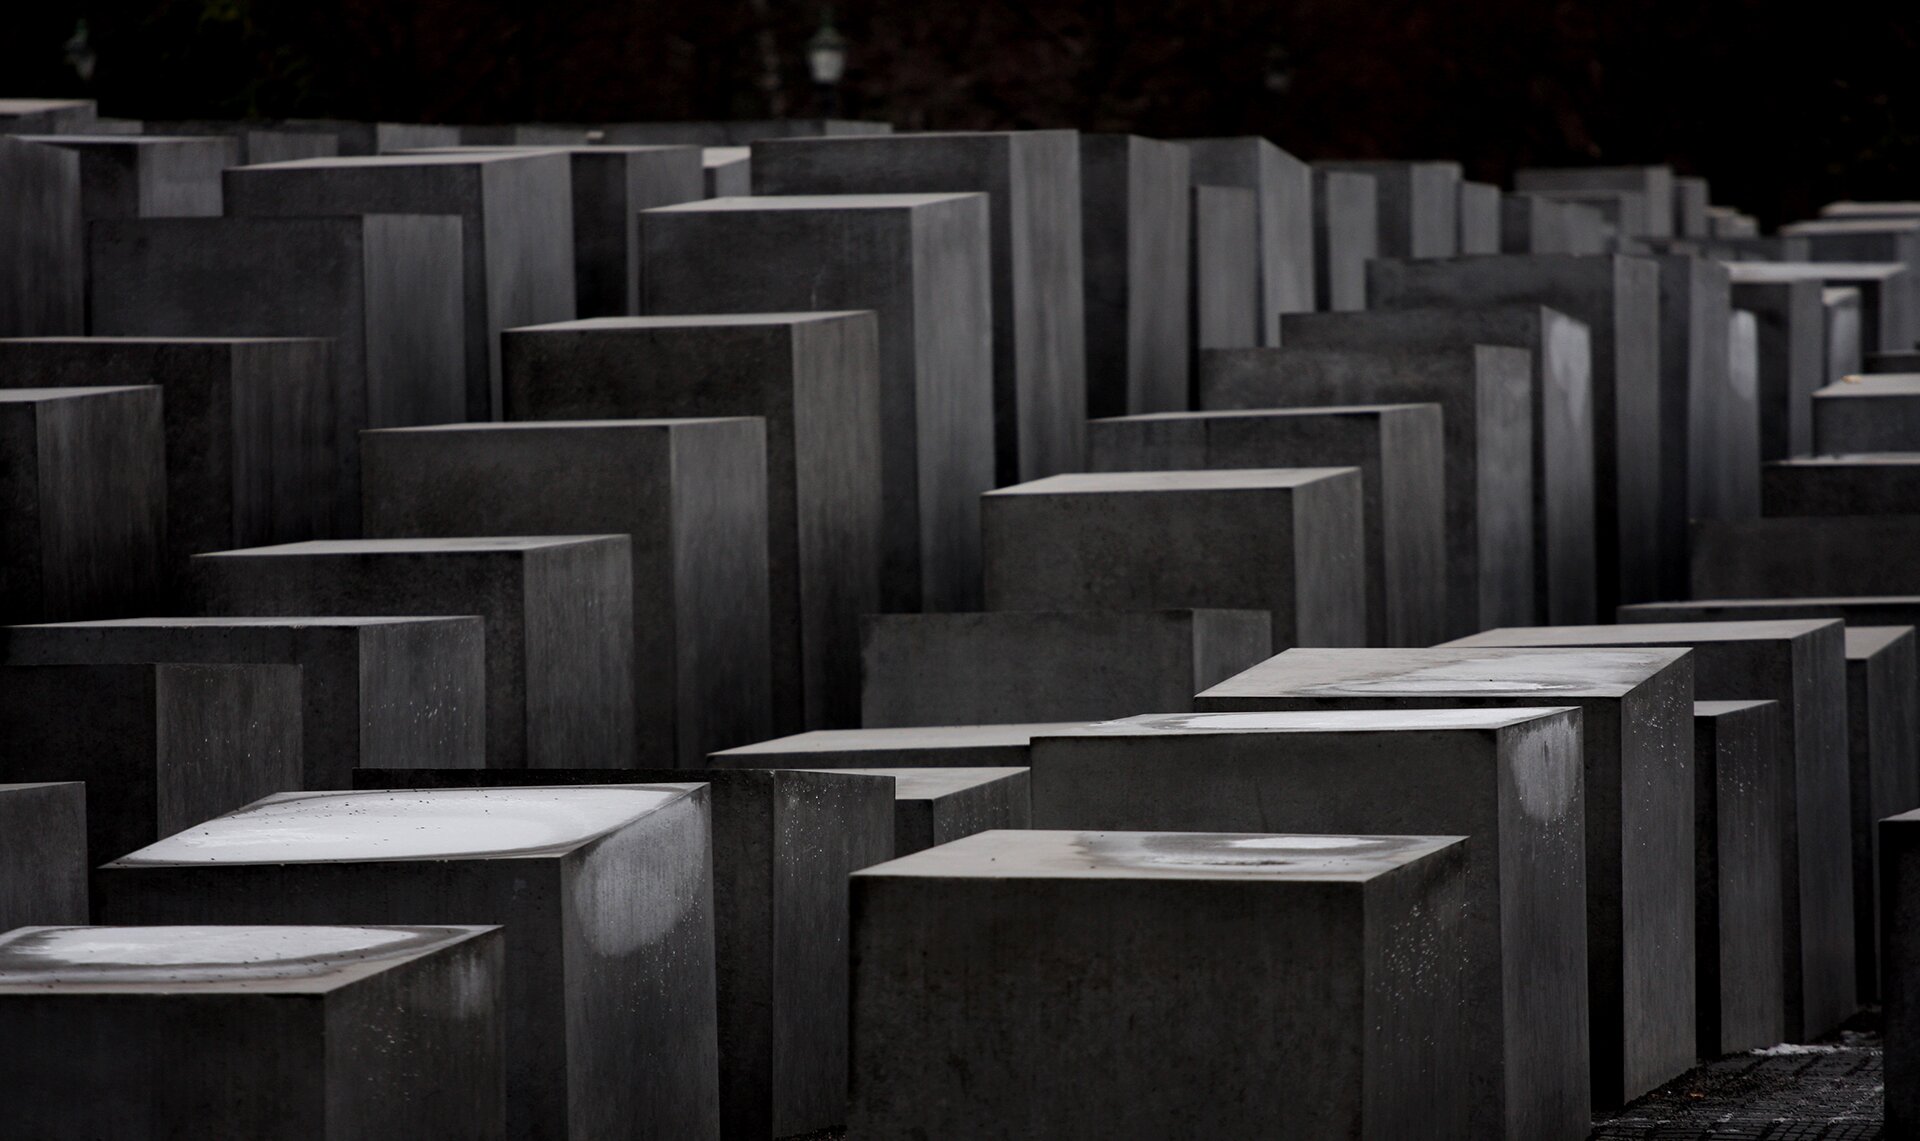 Berliński pomnik poświęcony pamięci europejskich Żydów zgładzonych podczas II wojny światowej Berliński pomnik poświęcony pamięci europejskich Żydów zgładzonych podczas II wojny światowej Źródło: flickr.com/Nicola Romagna, licencja: CC BY 2.0.